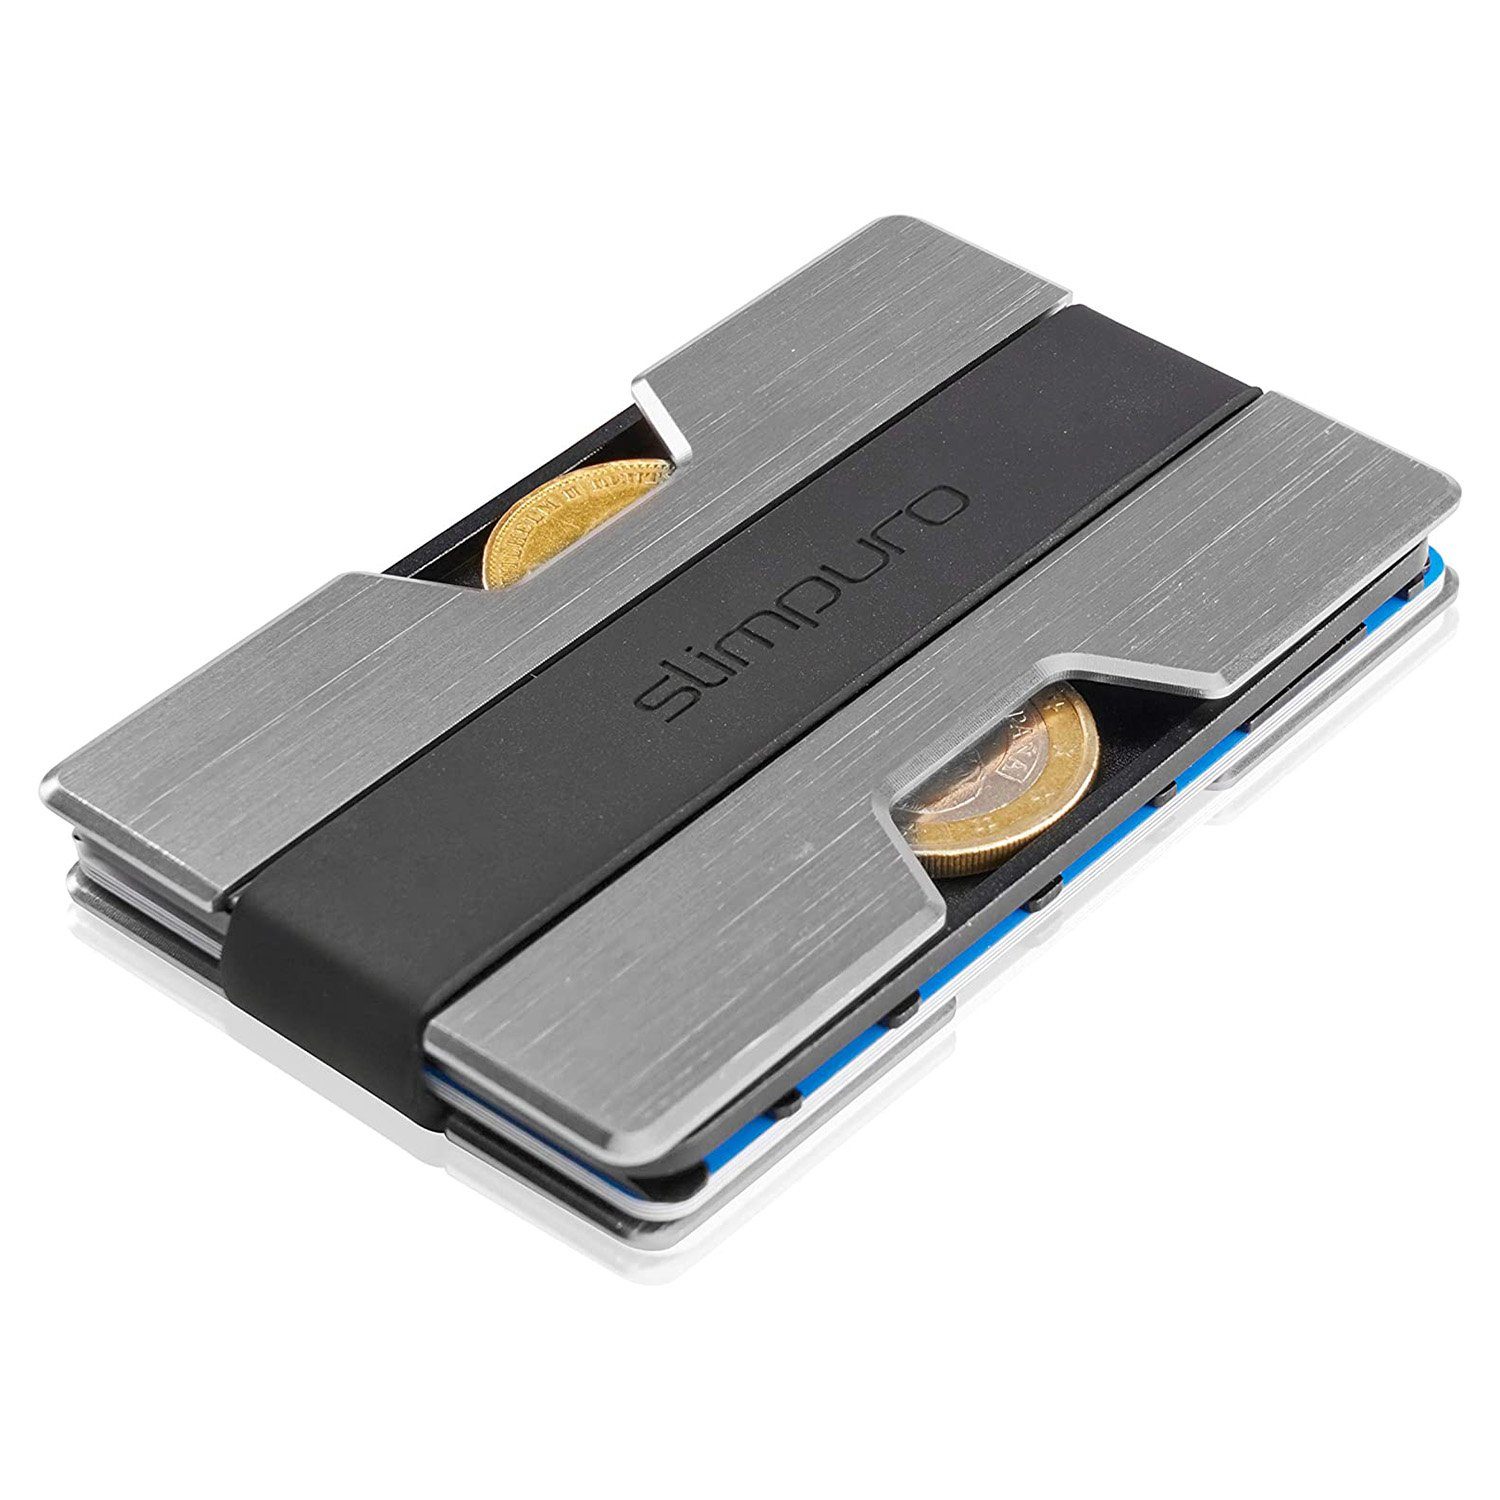 Slimpuro Geldbörse »NANO Slim Wallet Geldbörse extra-flach 12 Karten  Münzfach Aluminium« online kaufen | OTTO